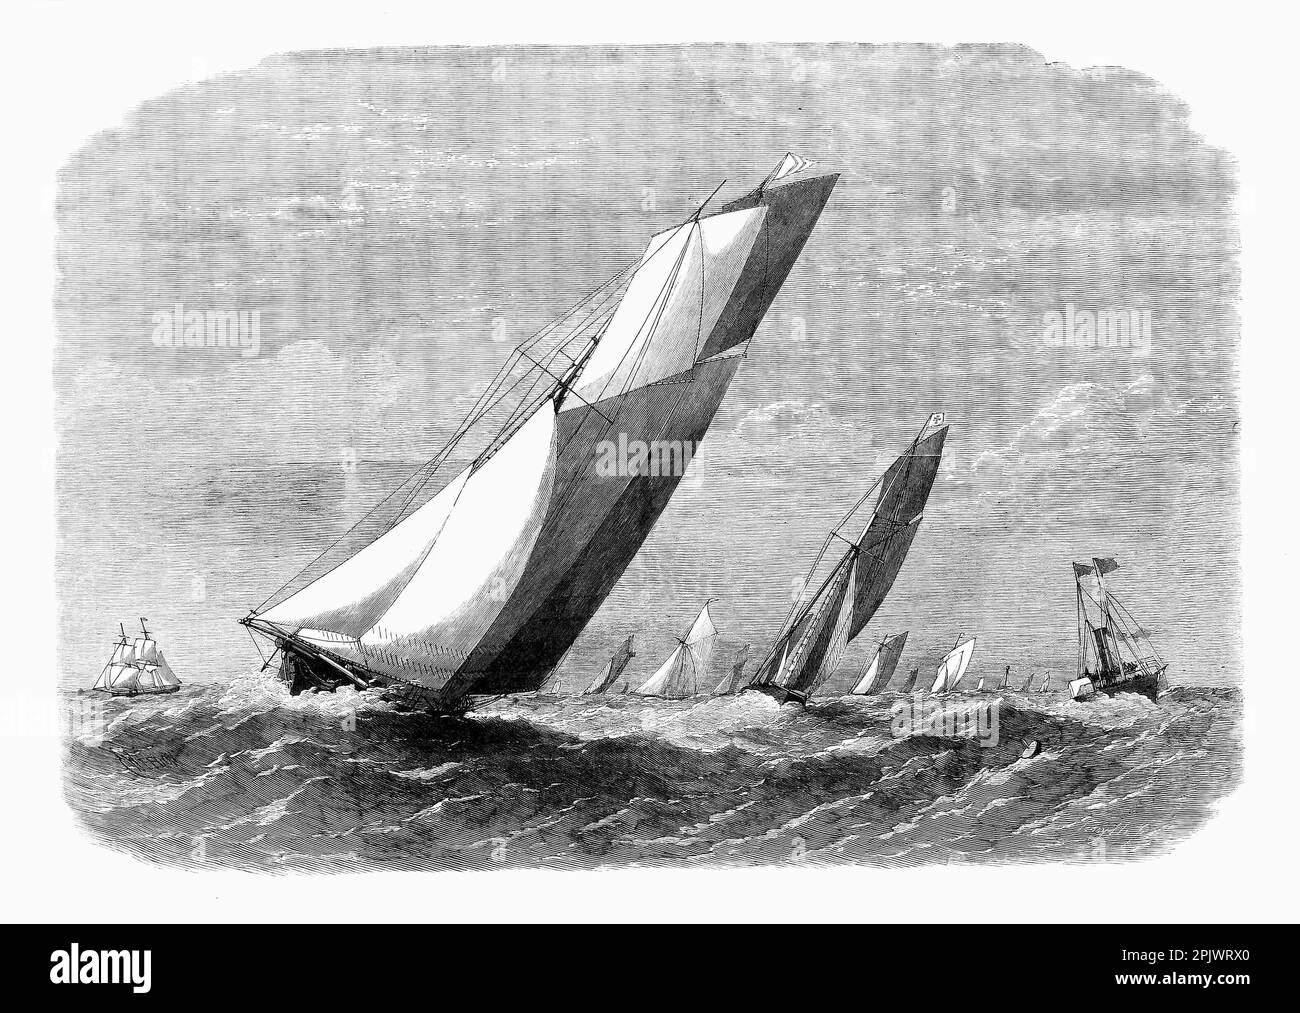 Gli yacht del Royal Thames Yacht Club, il più antico yacht club del mondo, che corre al largo della costa del Kent nell'estate del 1865 Foto Stock